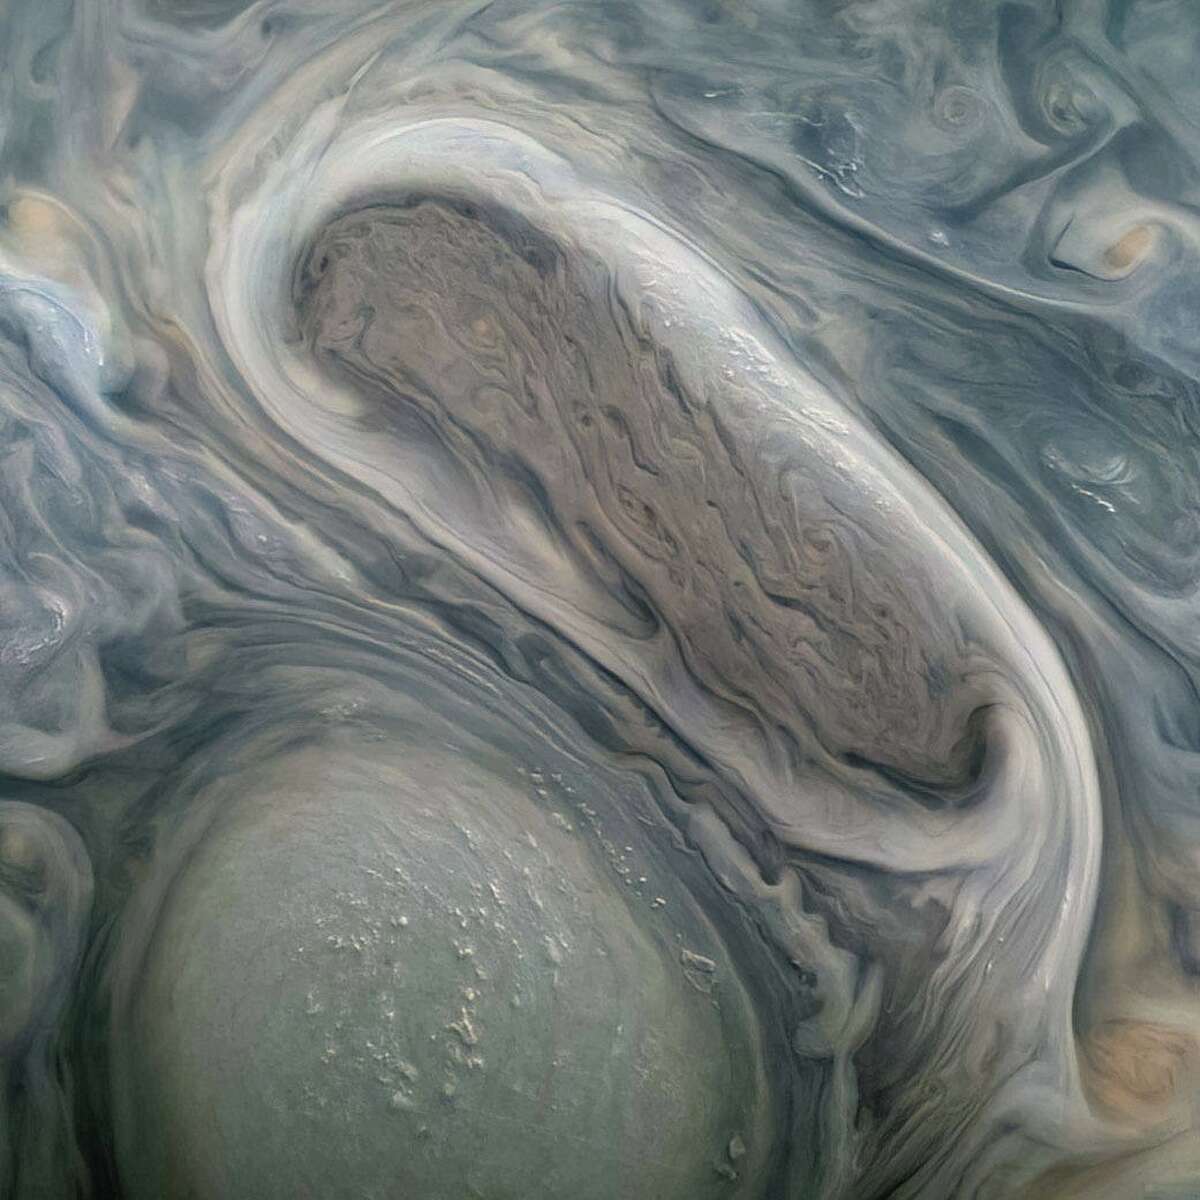 Juno capturó esta foto de dos tormentas en Júpiter cuando pasaba por el planeta en noviembre.  Según la NASA, el científico ciudadano Kevin M. Gill utilizó datos sin procesar de JunoCam para mejorar el color y el contraste.